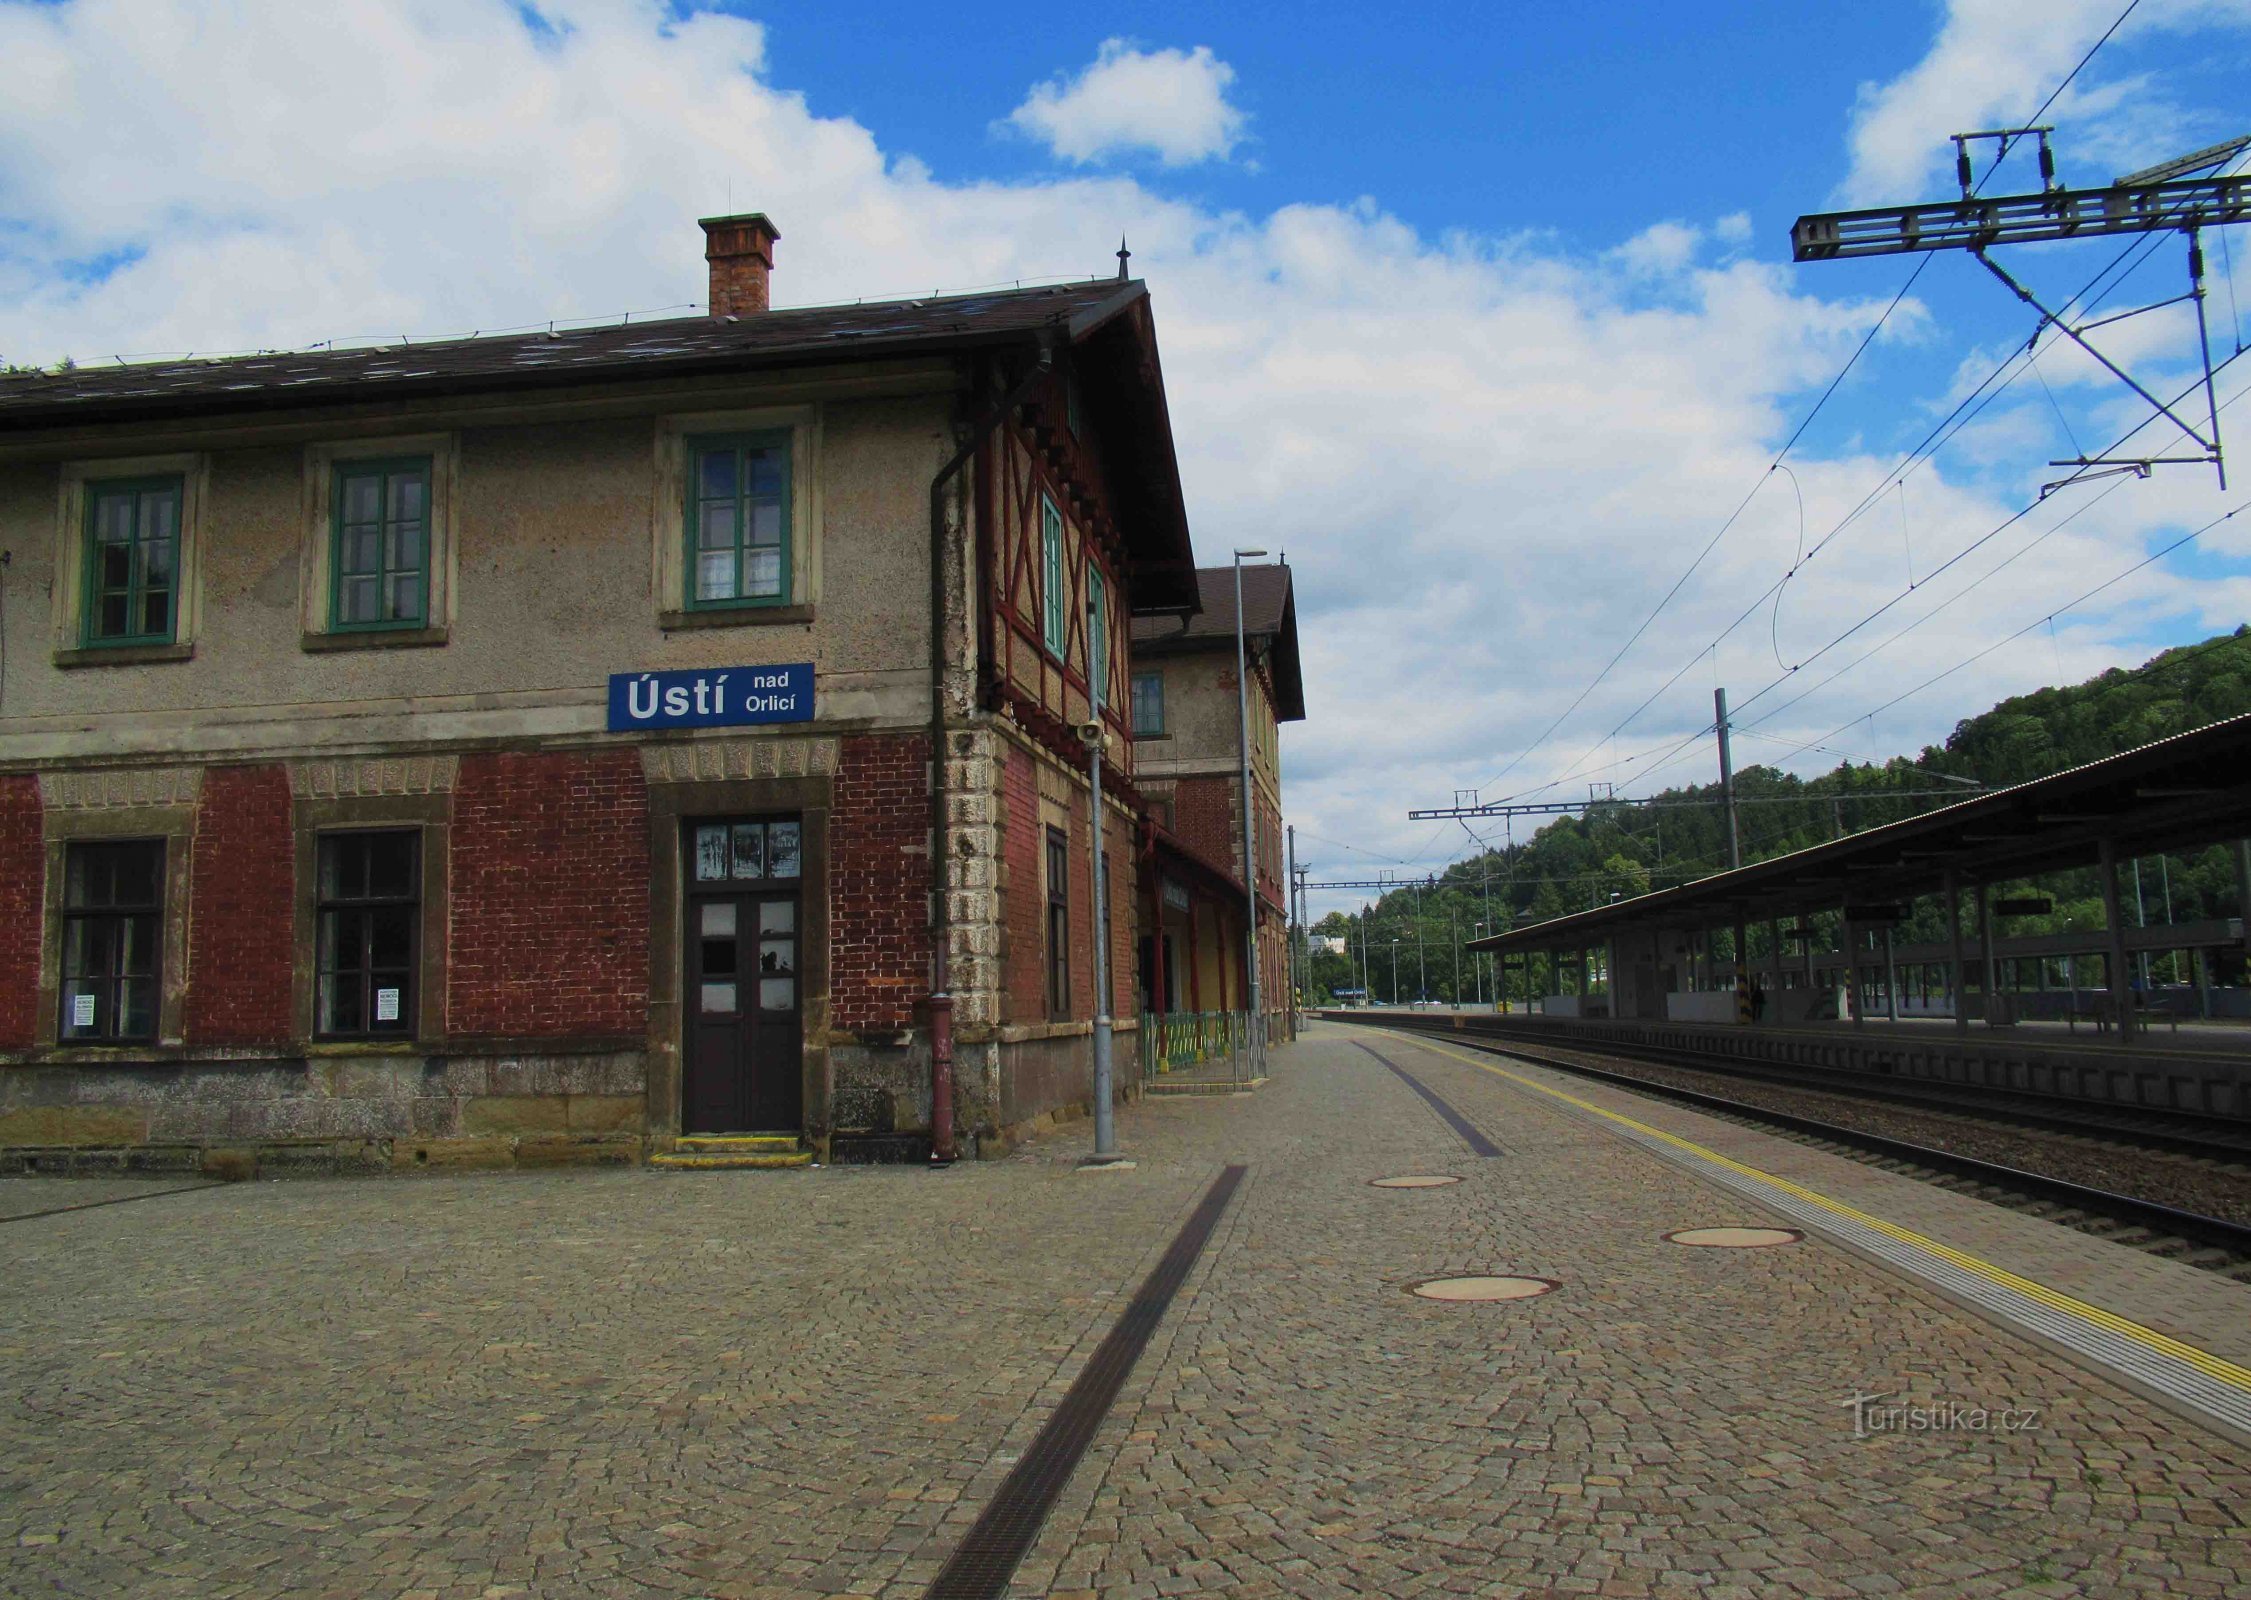 Edificio storico della stazione ferroviaria di Ústí nad Orlicí